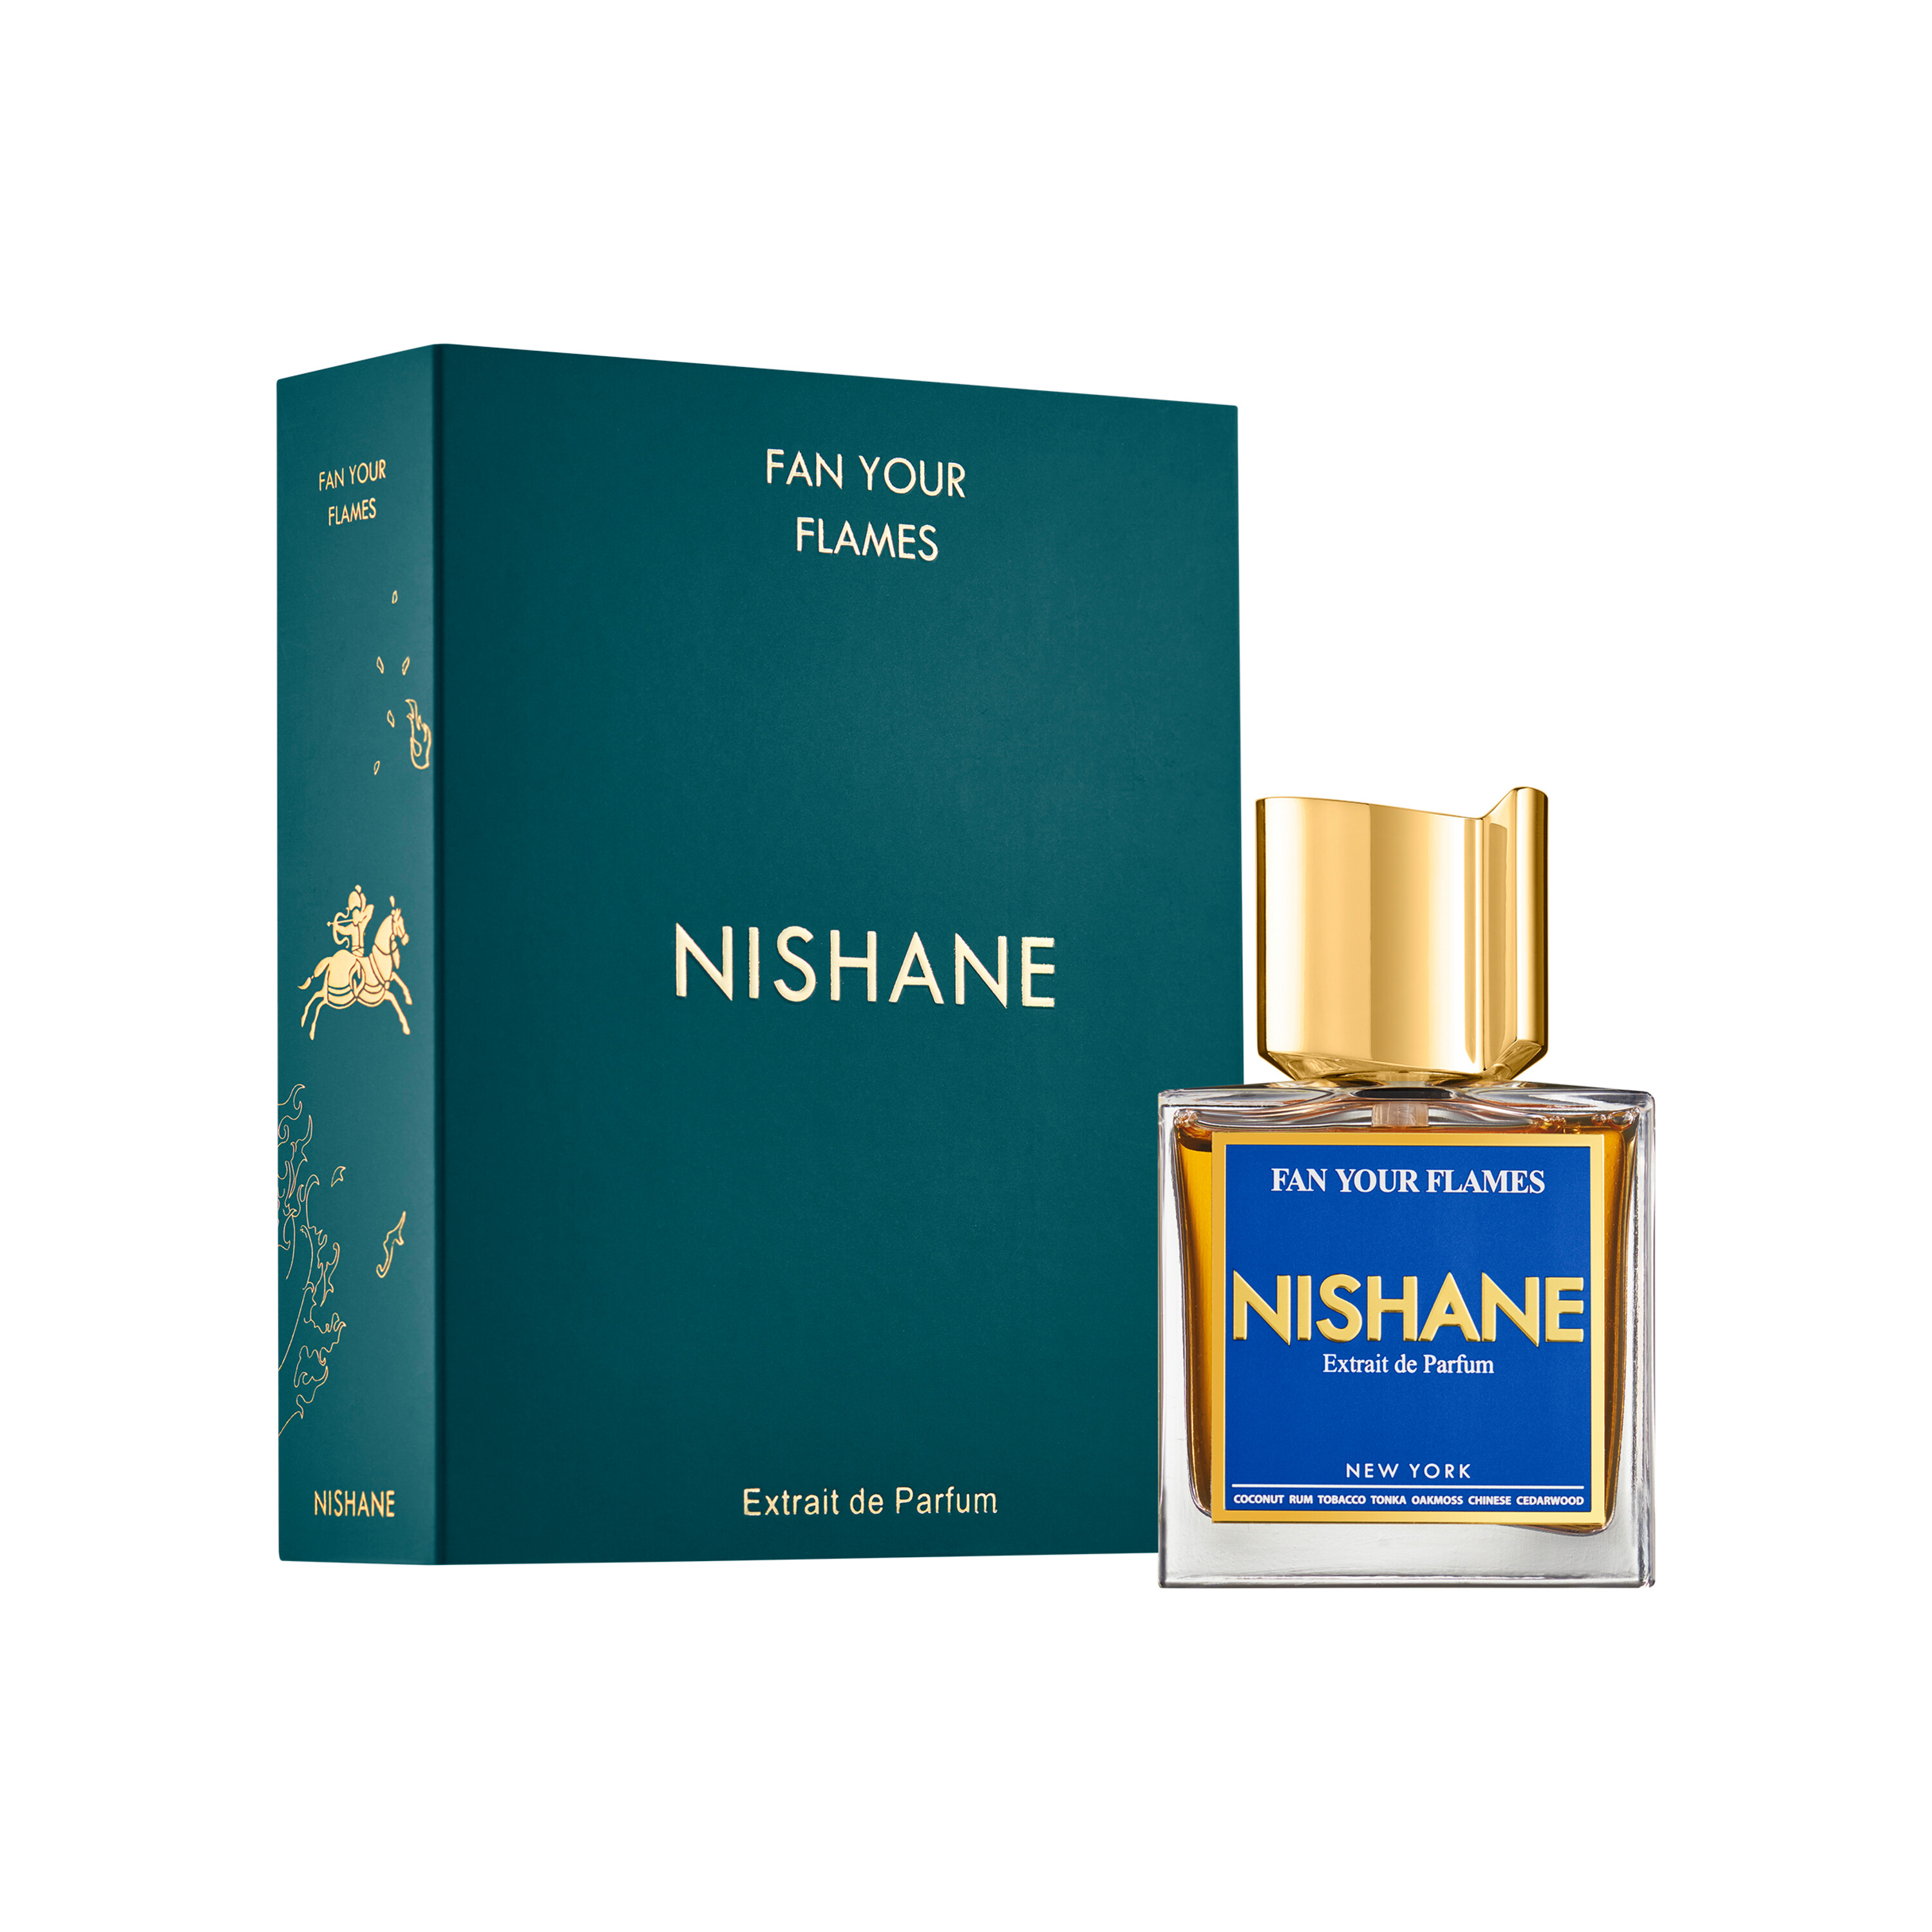 NISHANE Fan Your Flames Extrait de Parfum 50ml